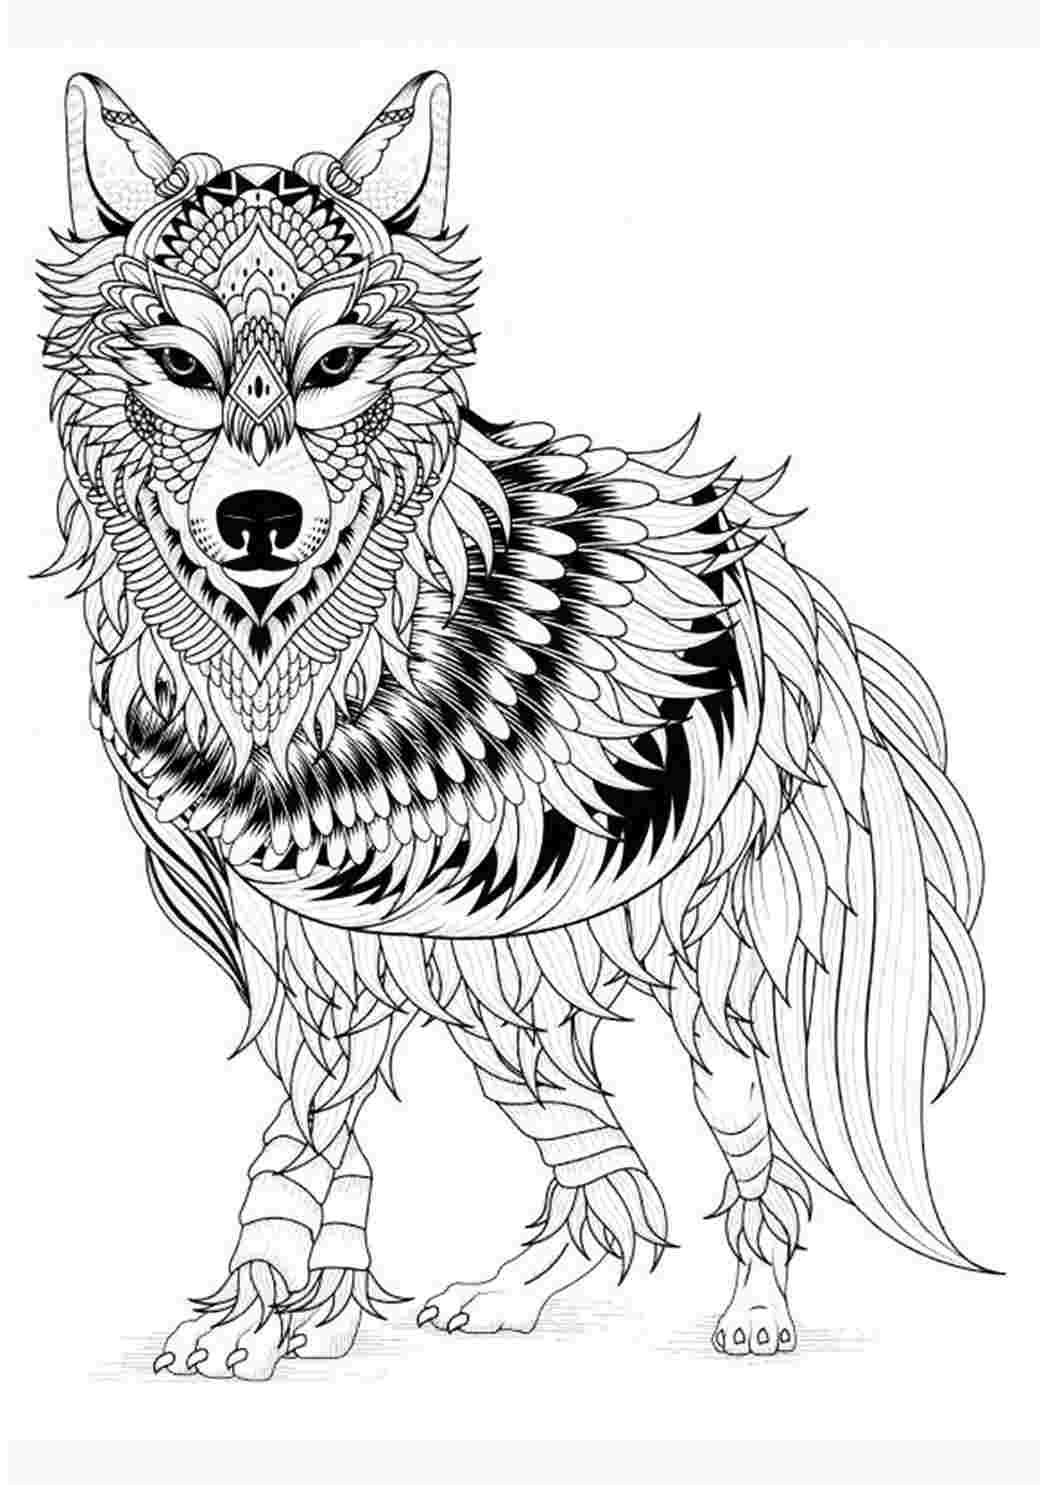 100 000 изображений по запросу Раскраска волк доступны в рамках роялти-фри лицензии